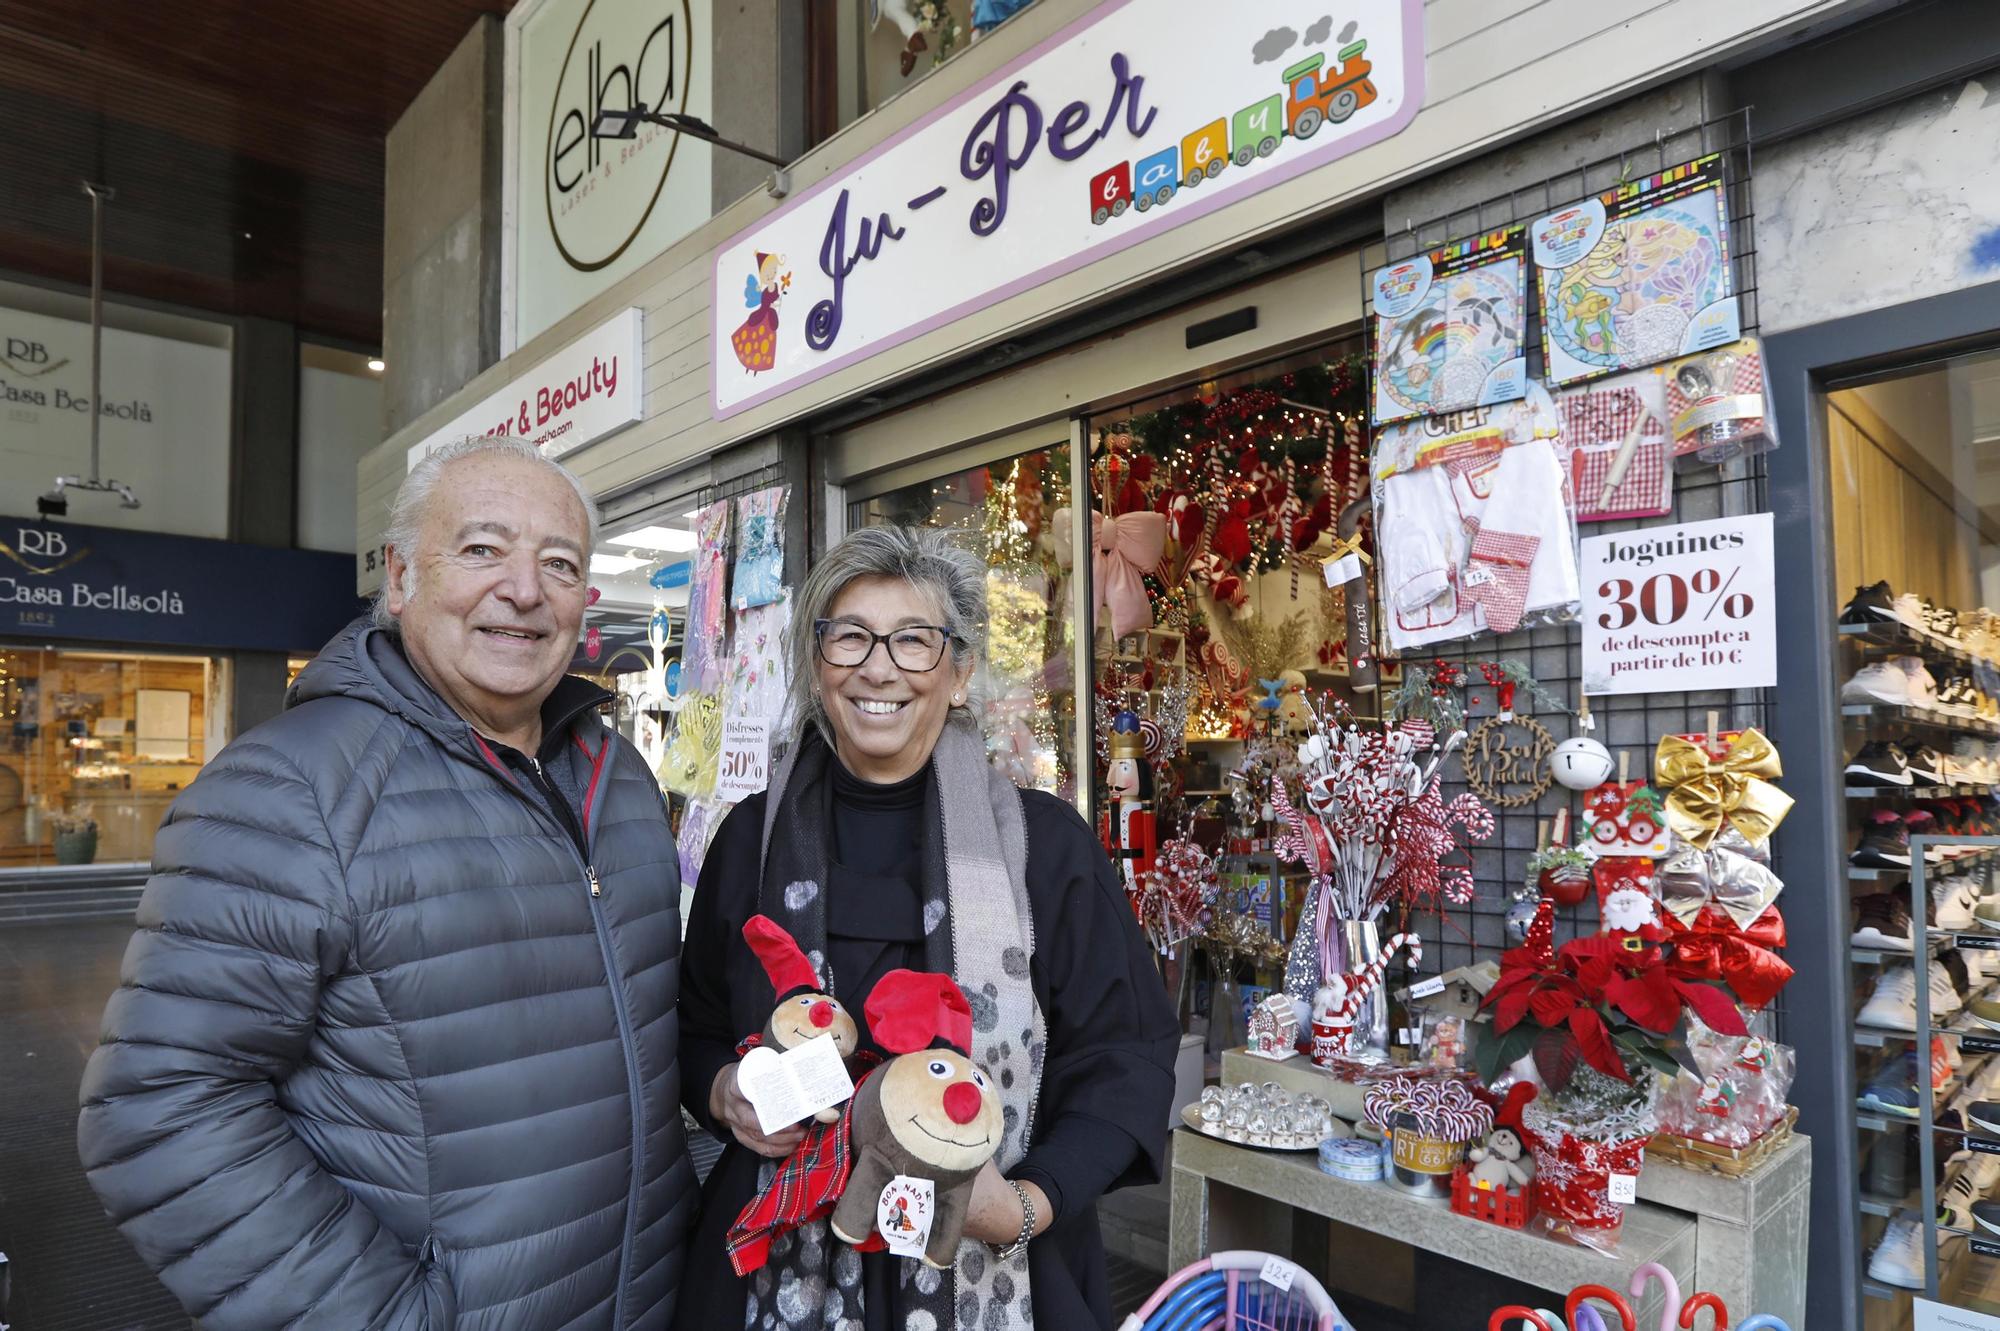 La botiga de joguines i regals Juper de Jaume I de Girona tancarà per jubilació després de 48 anys